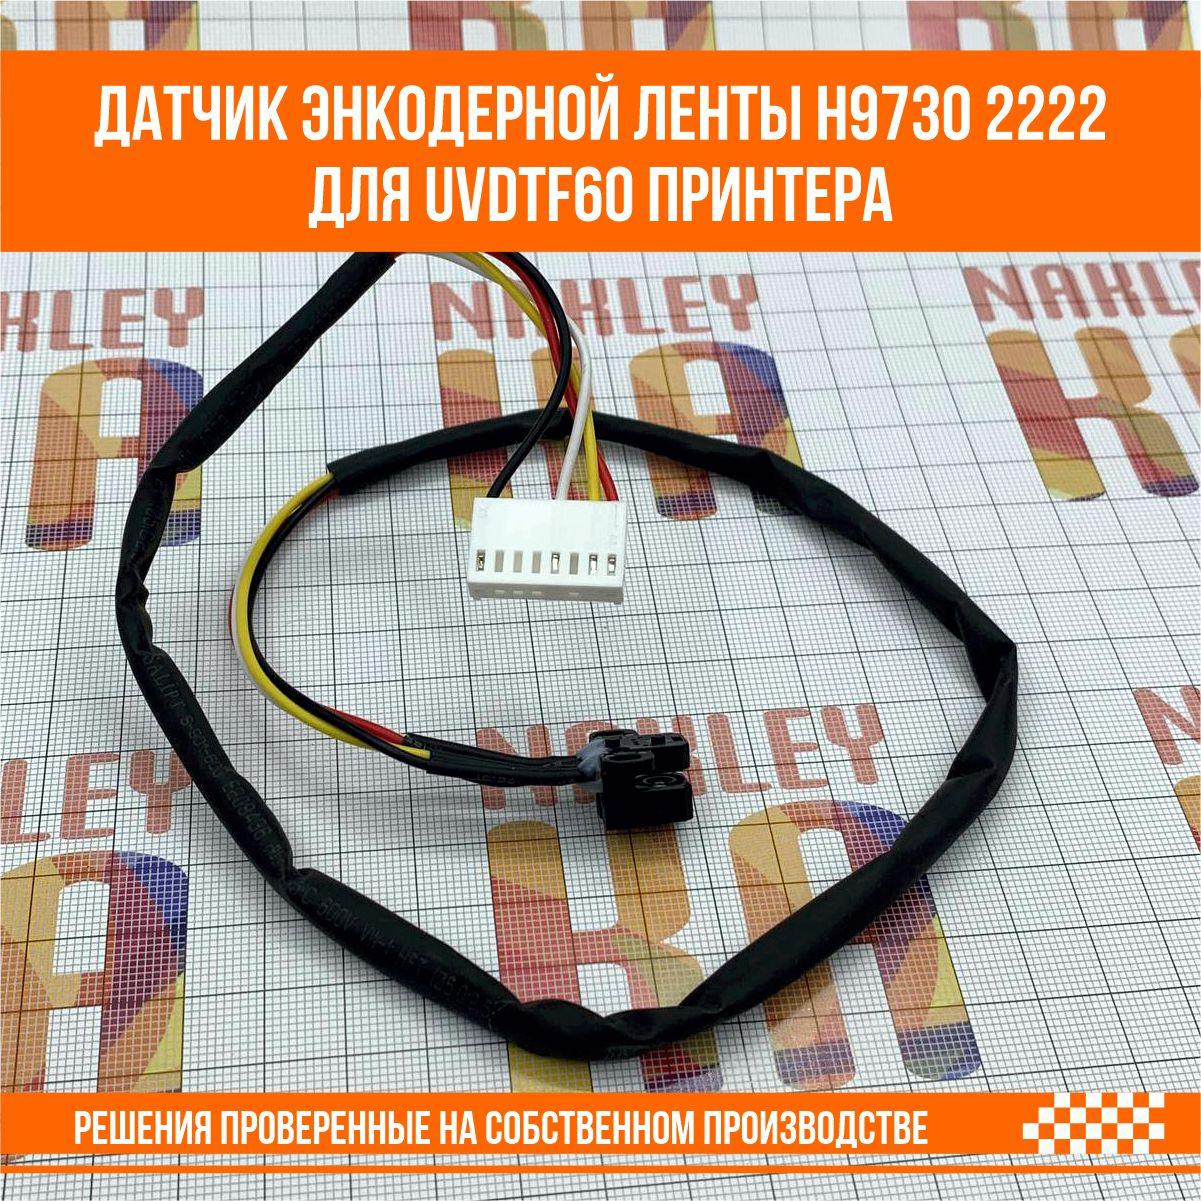 Датчик энкодерной ленты для UVDTF60 принтера H9730 2222